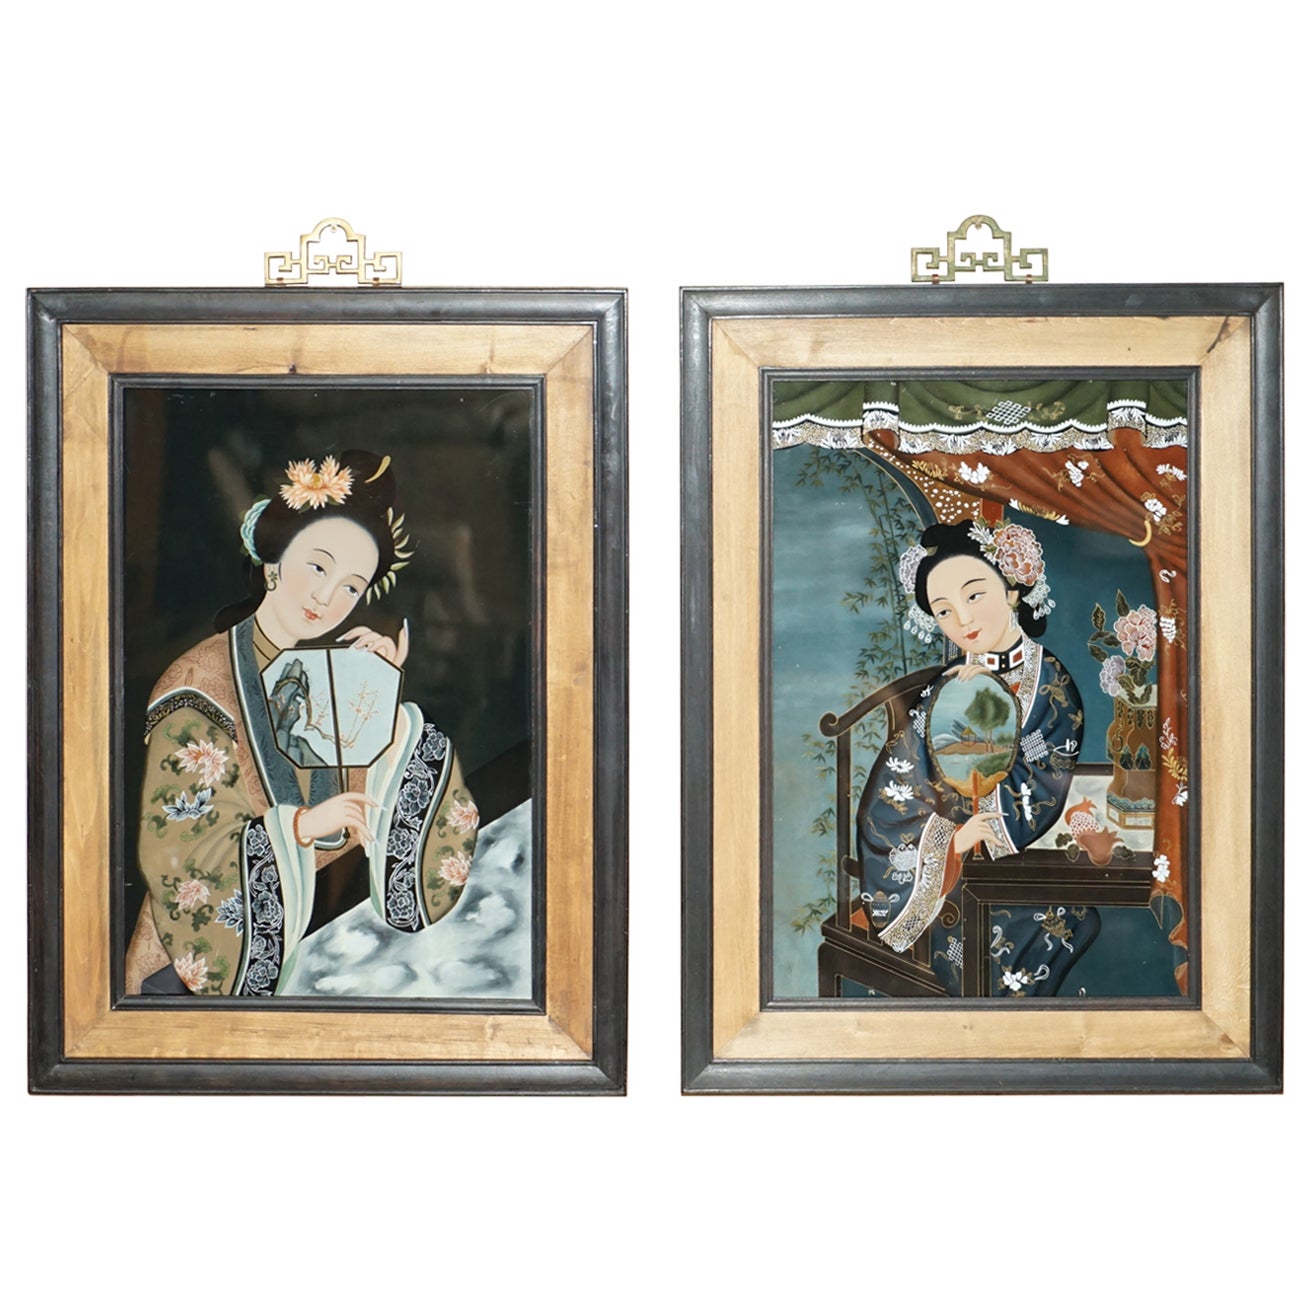 Jolie paire d'anciens portraits chinois anciens en verre peints à la main